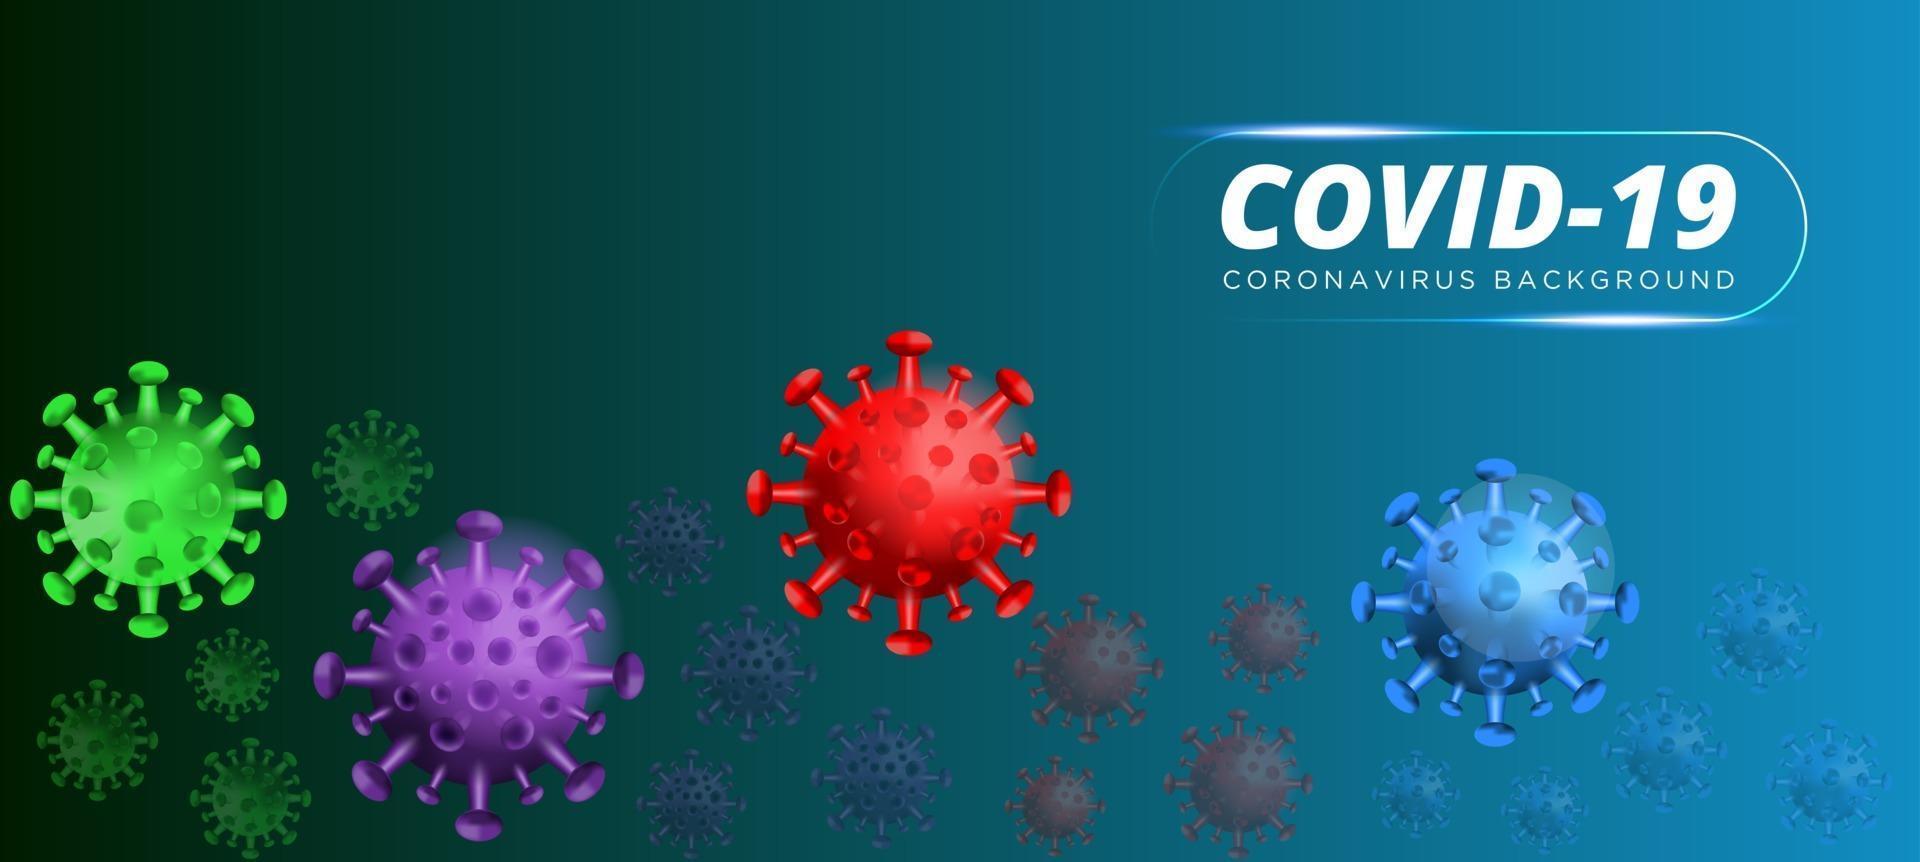 covid19. uitbraak van coronavirus, virale epidemie, 3D-weergave van virus, organisme illustratie. blauwe achtergrond met realistische 3D-viruscellen. 3D-afbeelding. vector